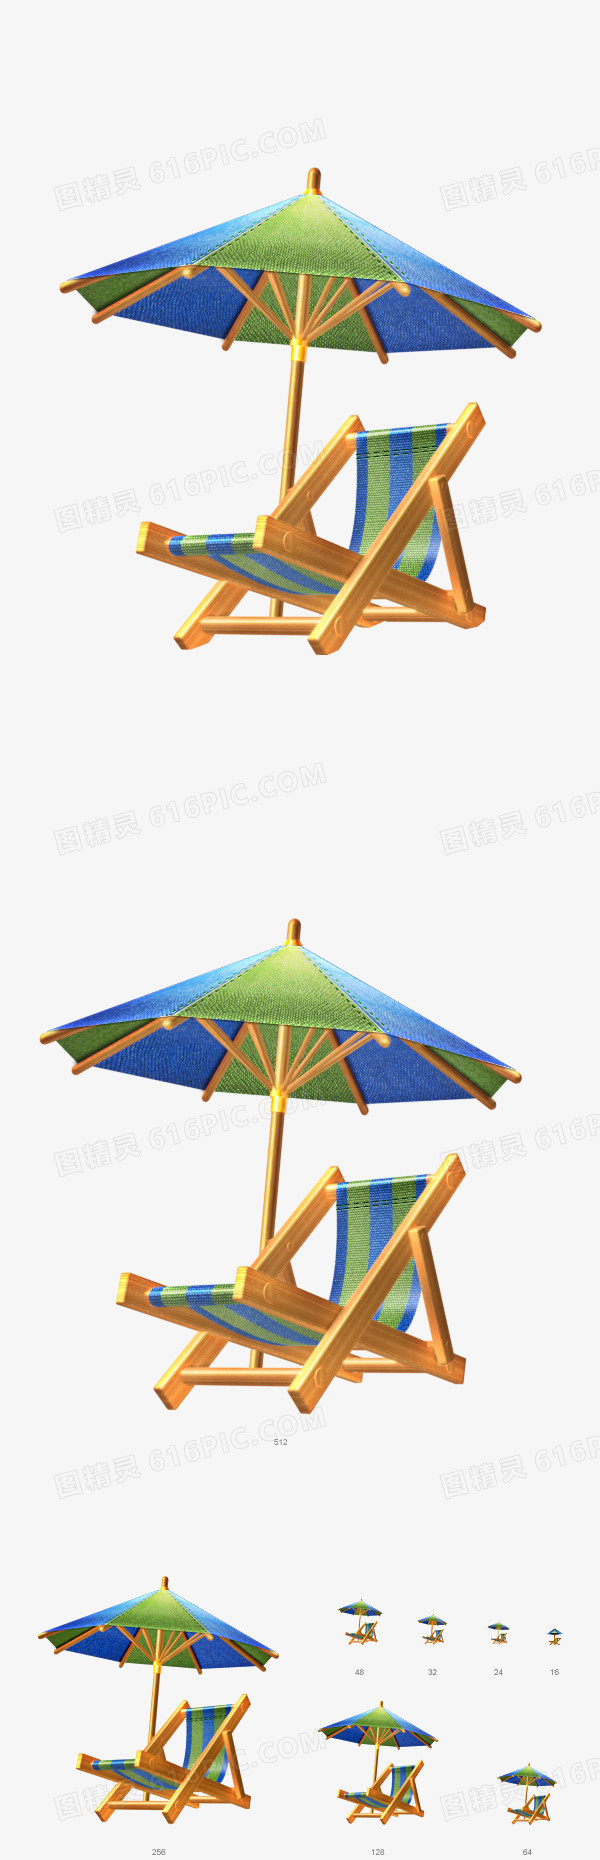 蓝色条纹遮阳伞躺椅卡通夏天